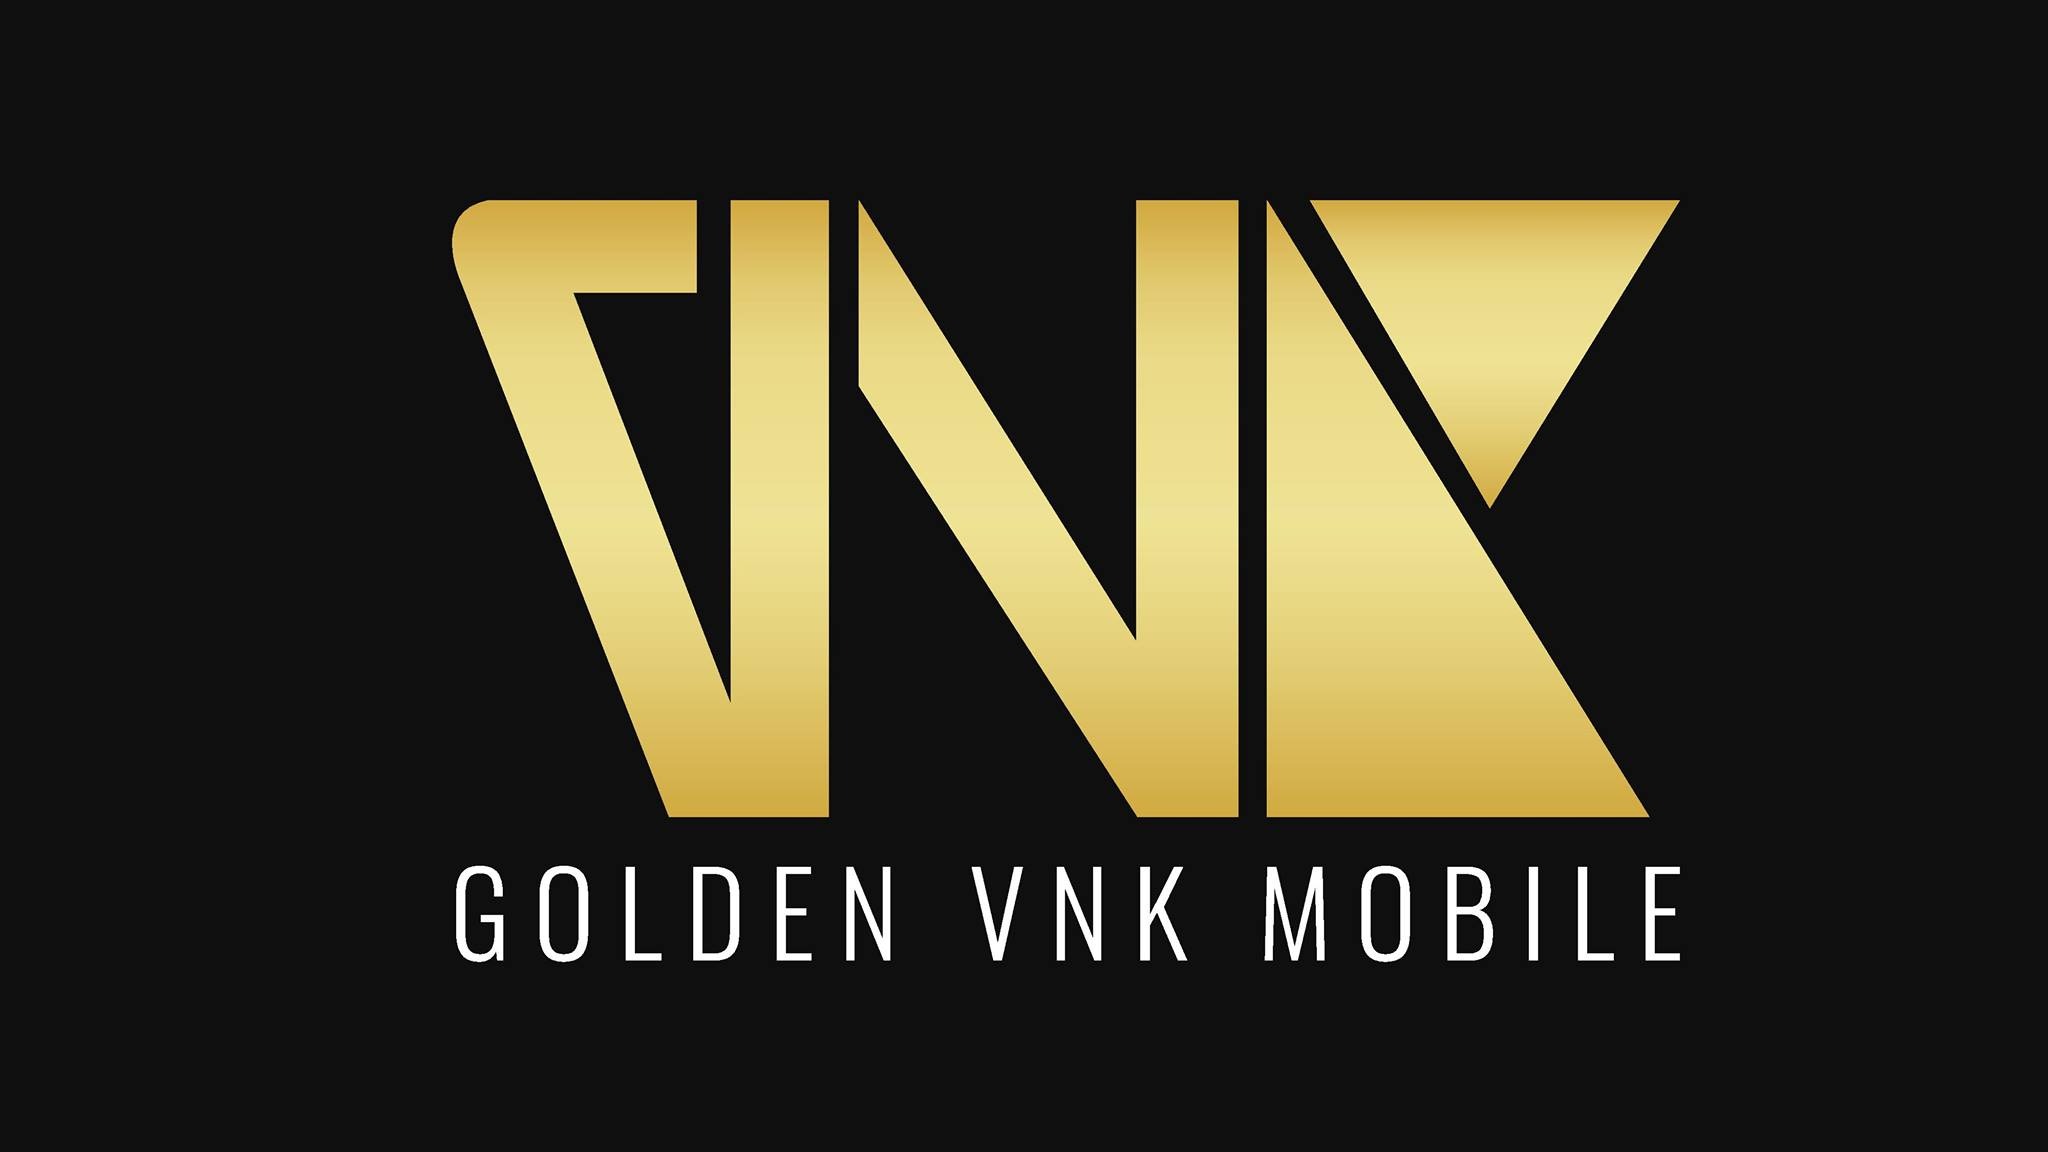 Golden VNK Mobile